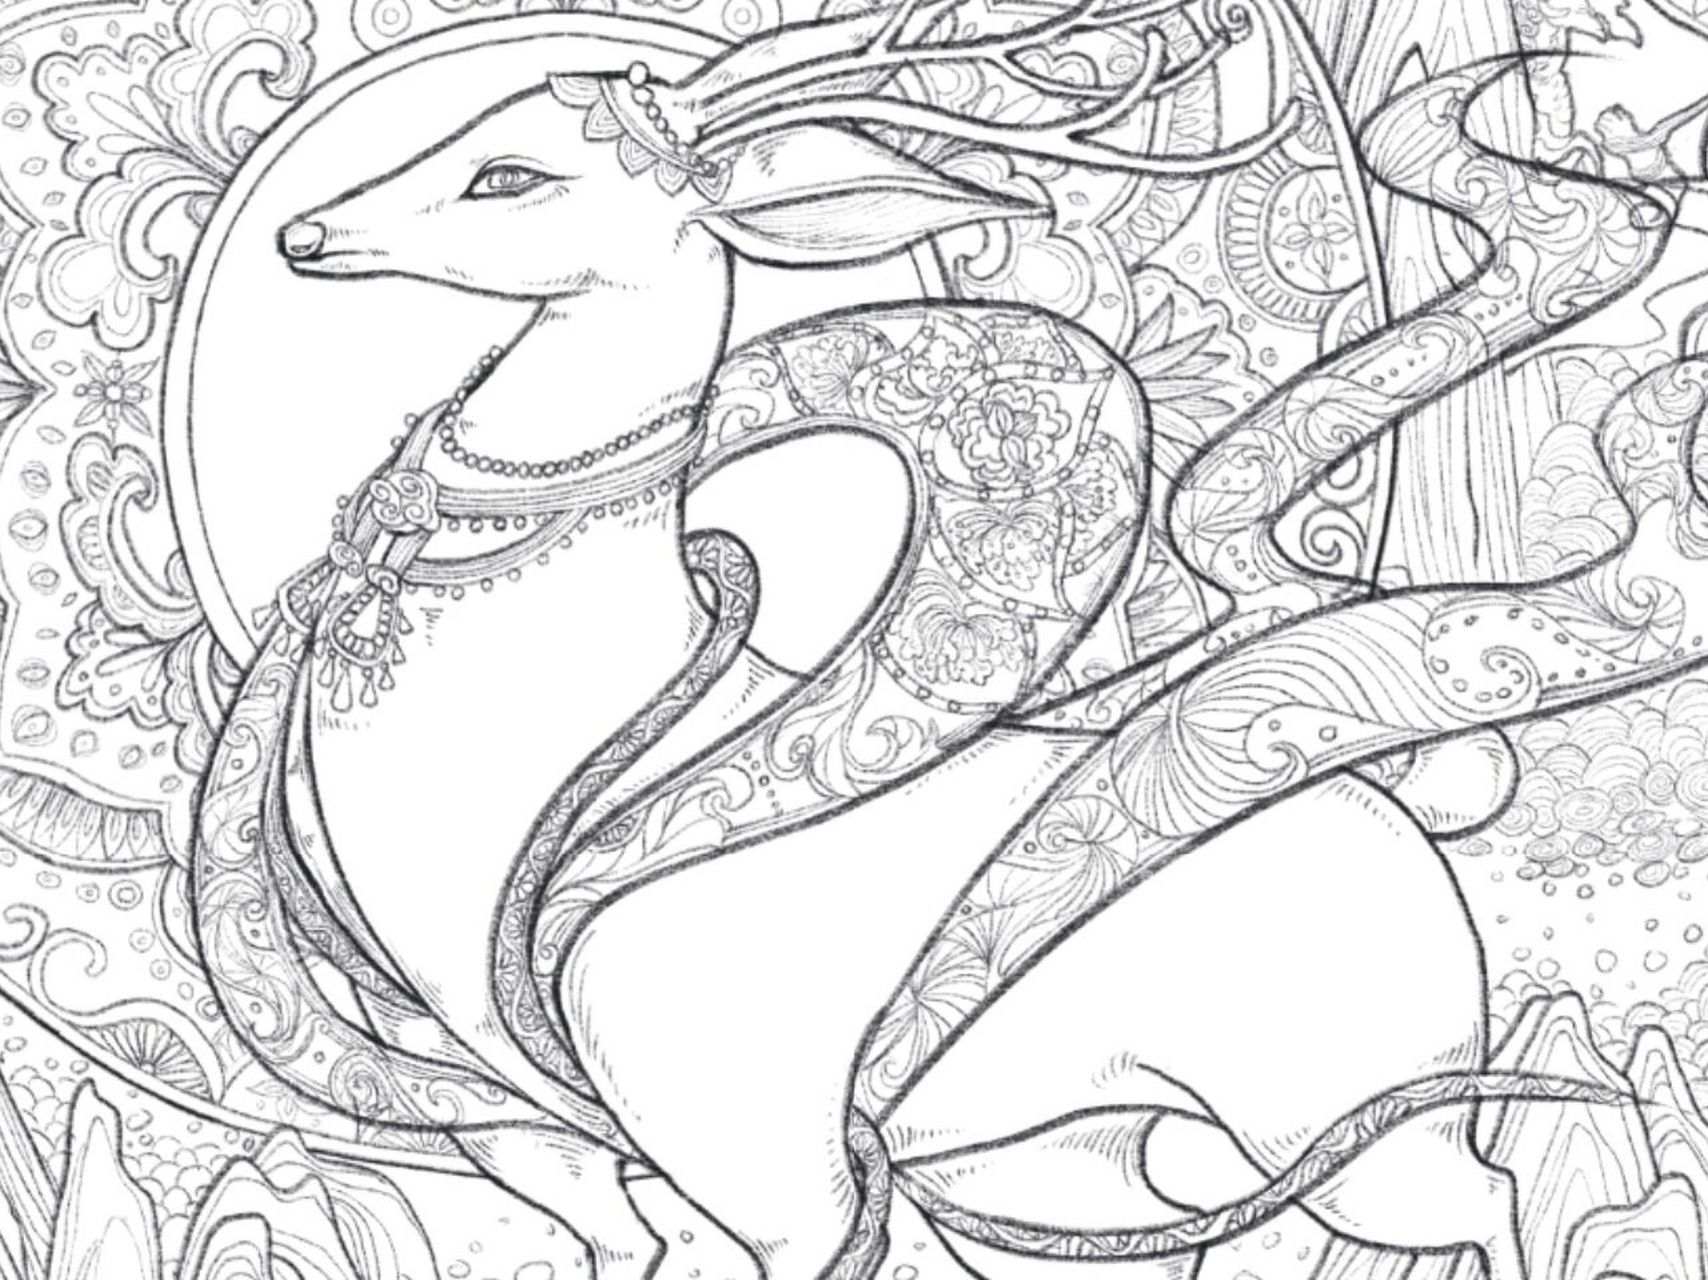 九色鹿背景的圆盘图形花纹采用释迦牟尼的元素